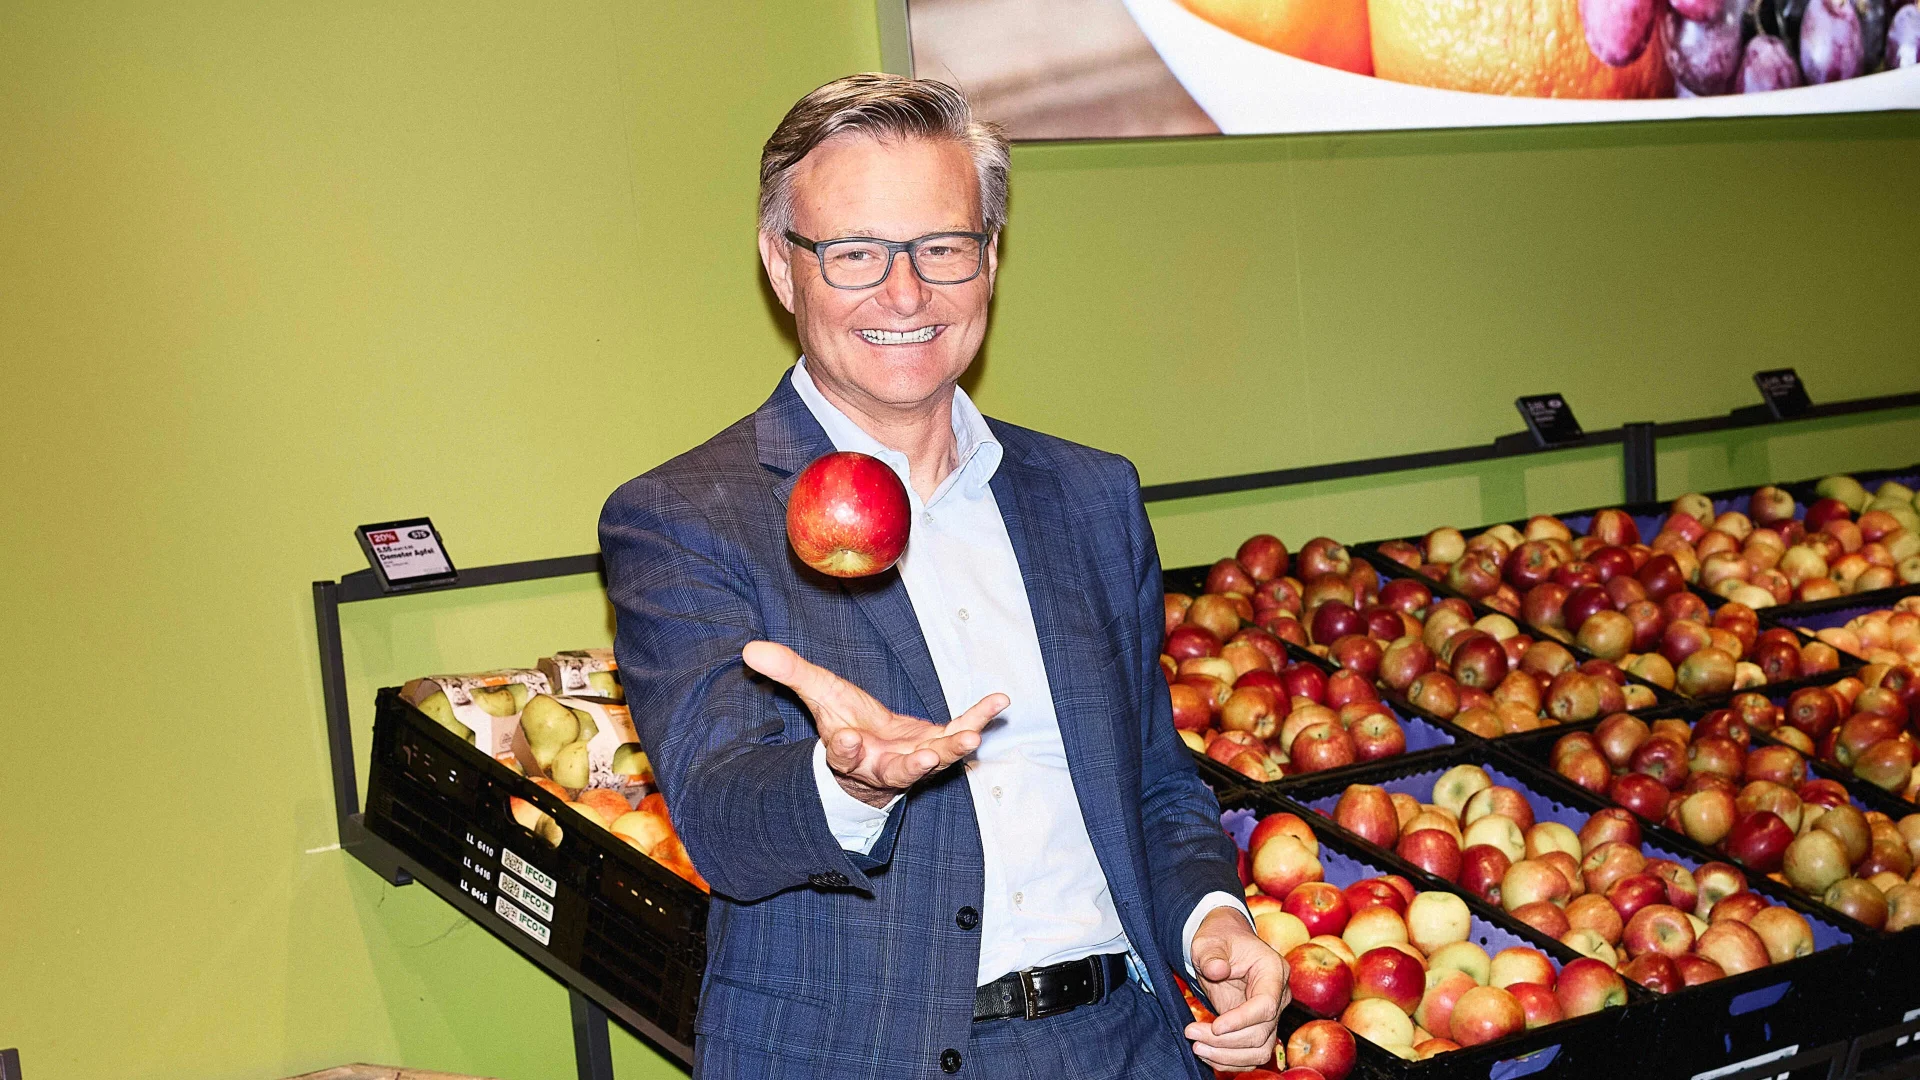 Mario Irminger im Supermarkt vor der Äpfelauslage